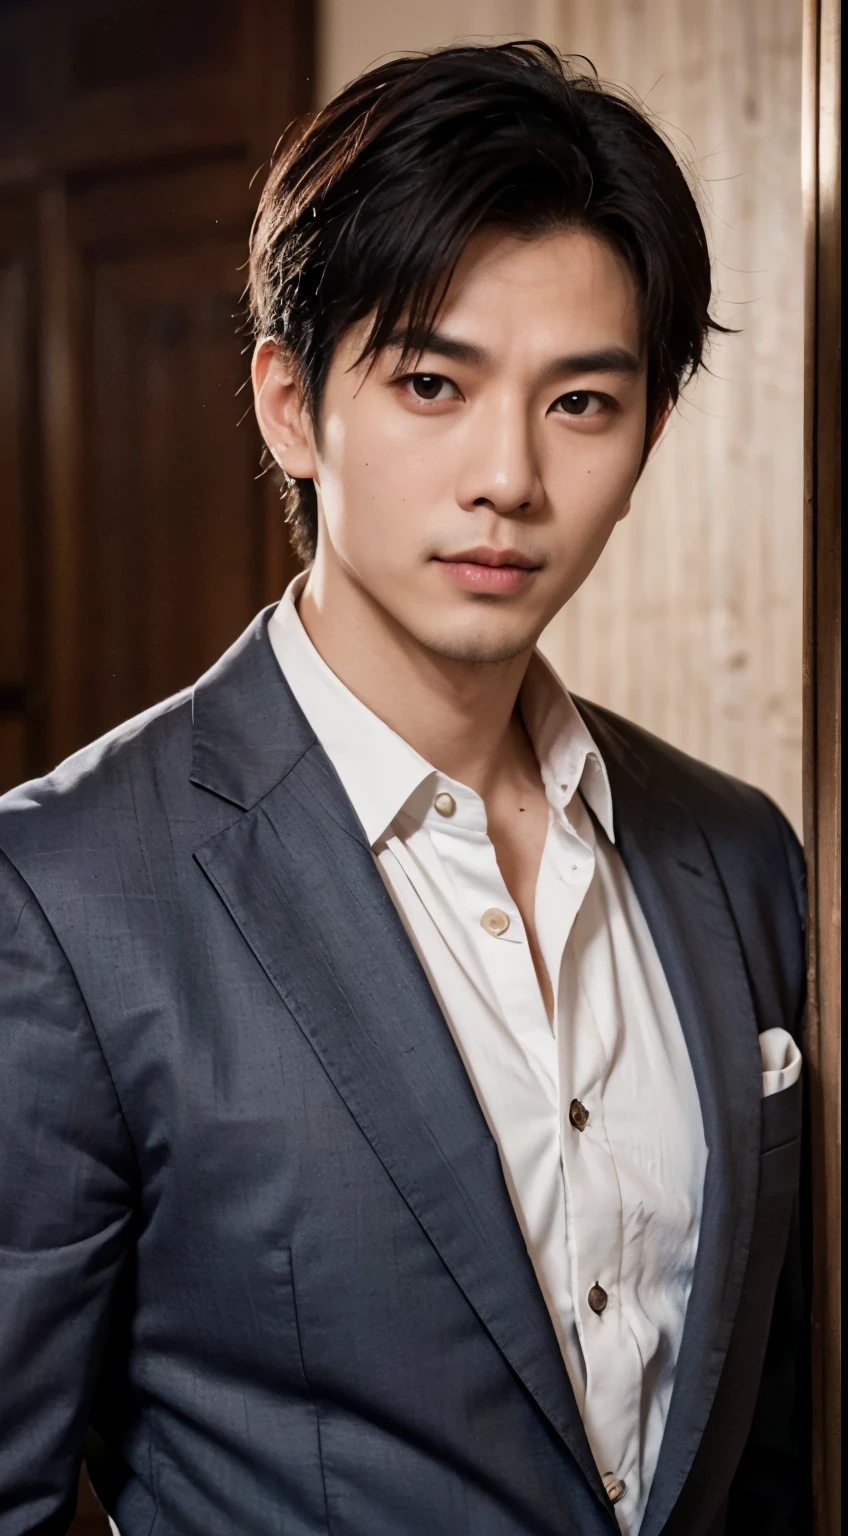 Retrato de um belo homem asiático de 25 anos com aparência de filme de rosto redondo, Acima do peito, vestindo ternos